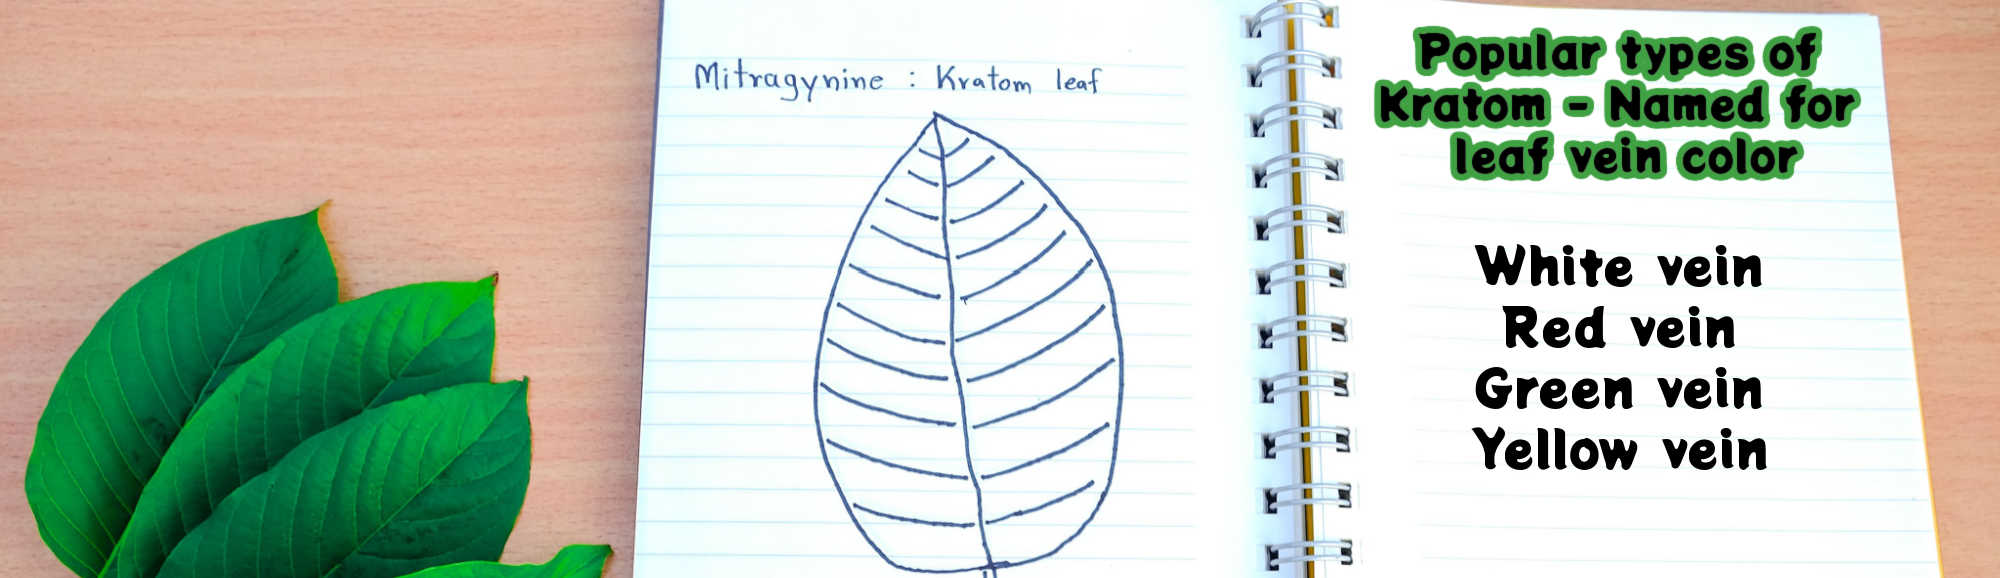 image of popular types of kratom named for their leaf vein color